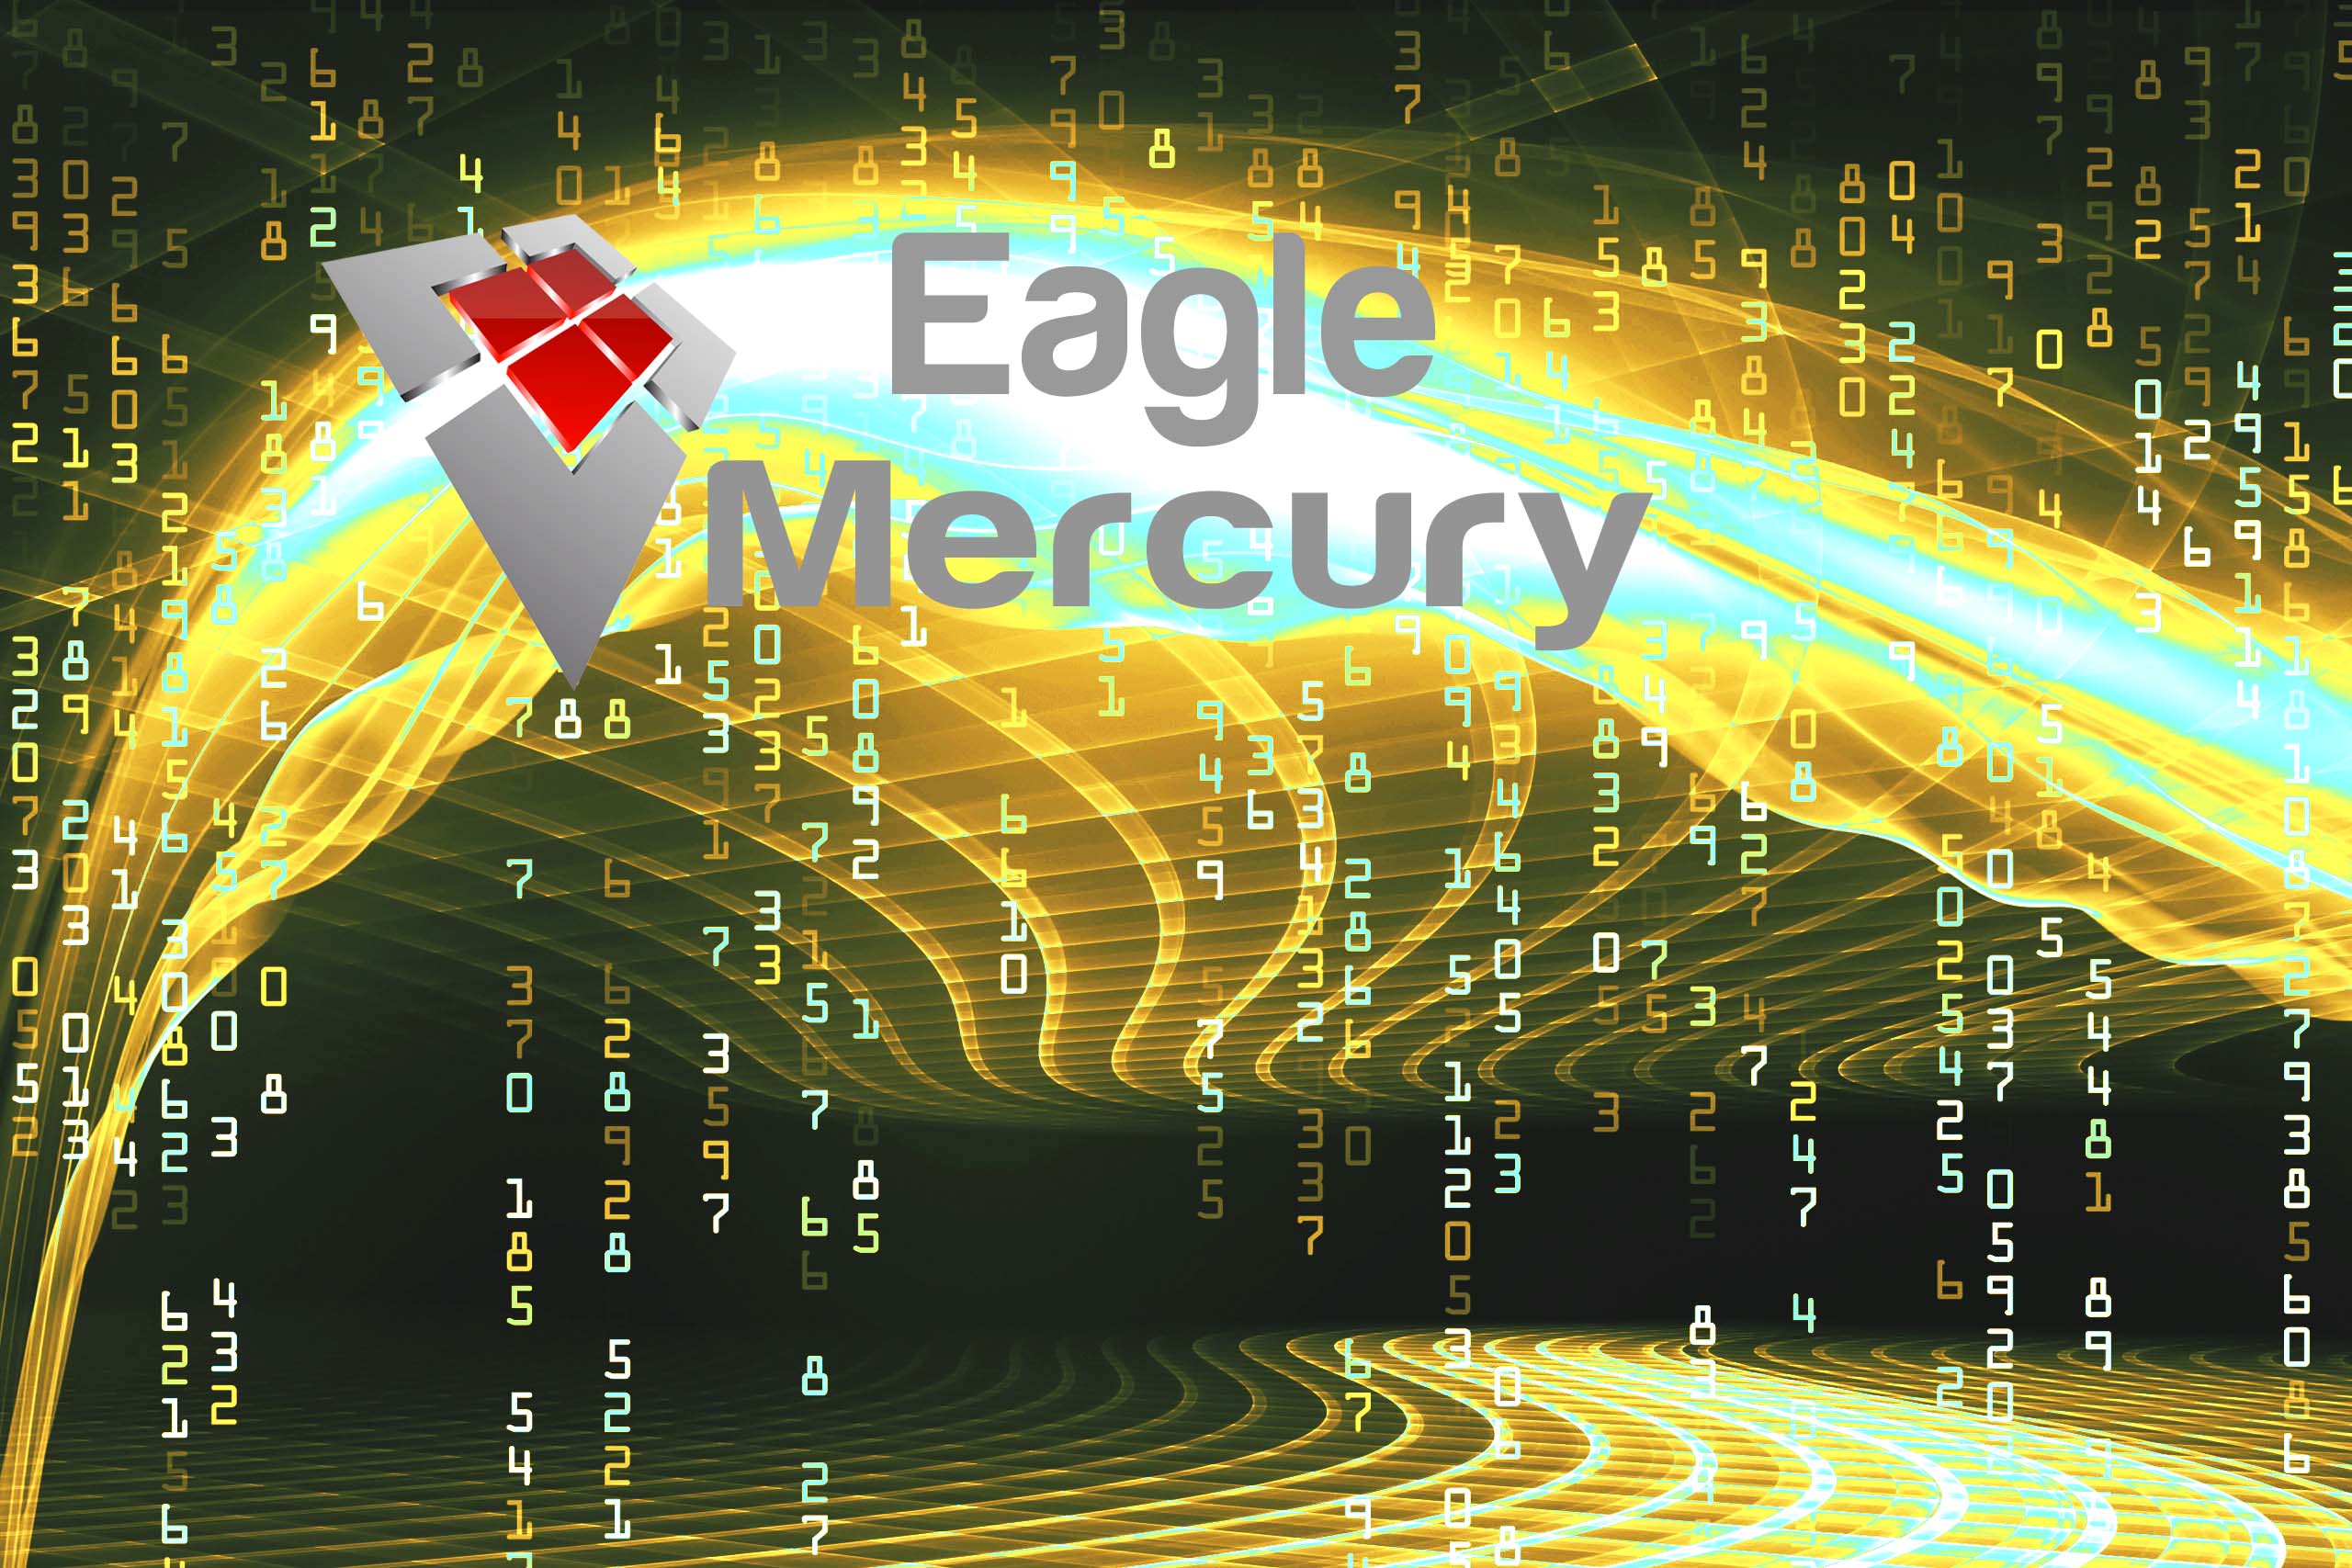 eaglemercury_integrazioni